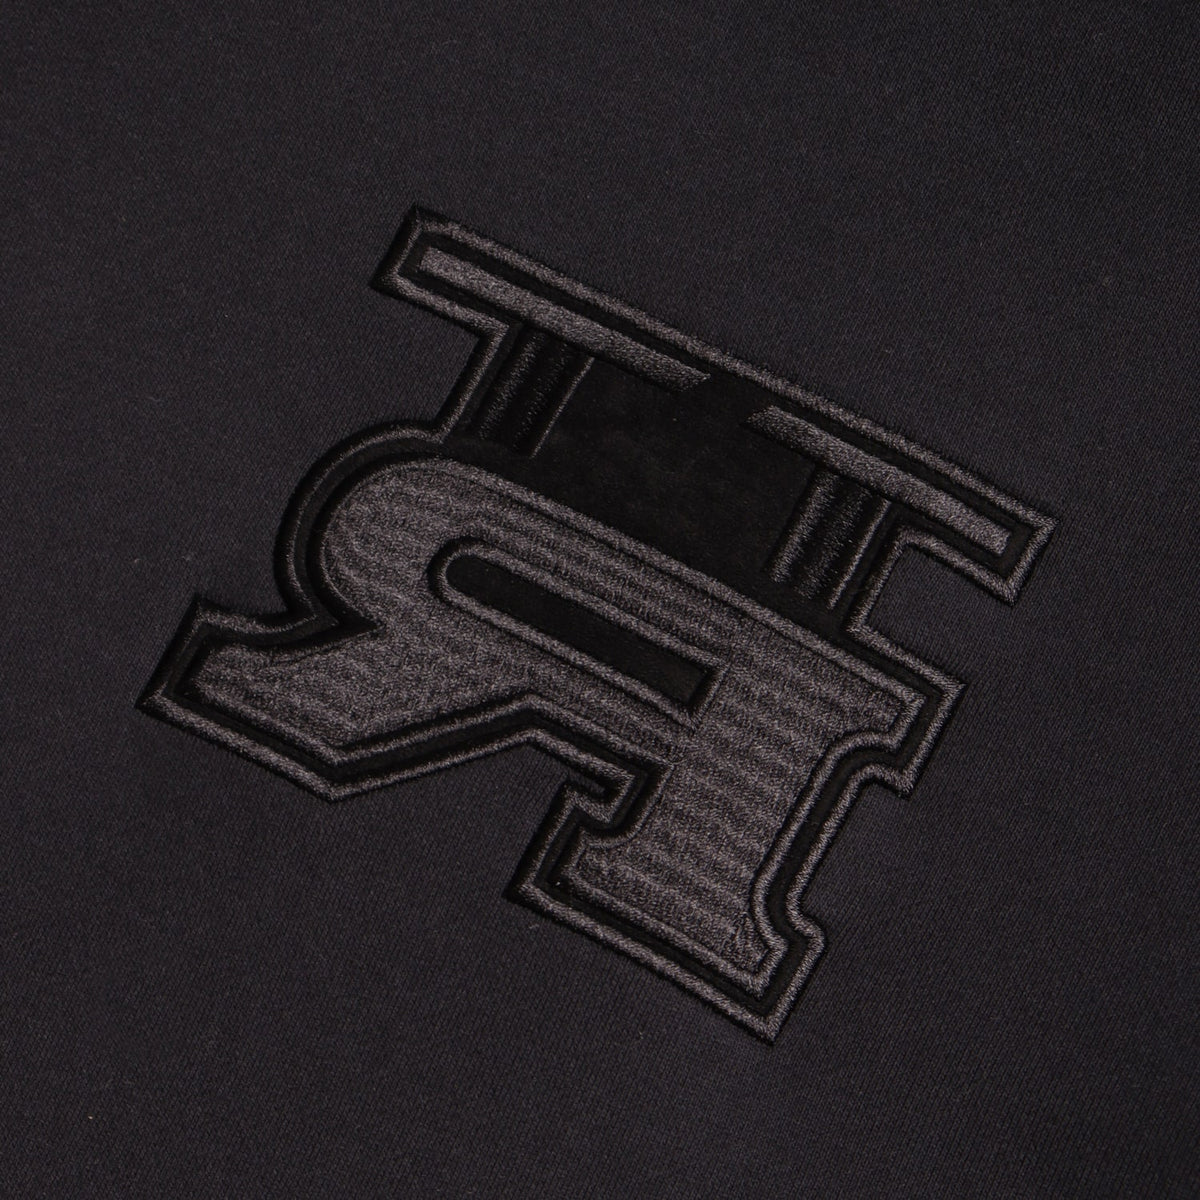 TT-R Standard Fit Tee Triple Black